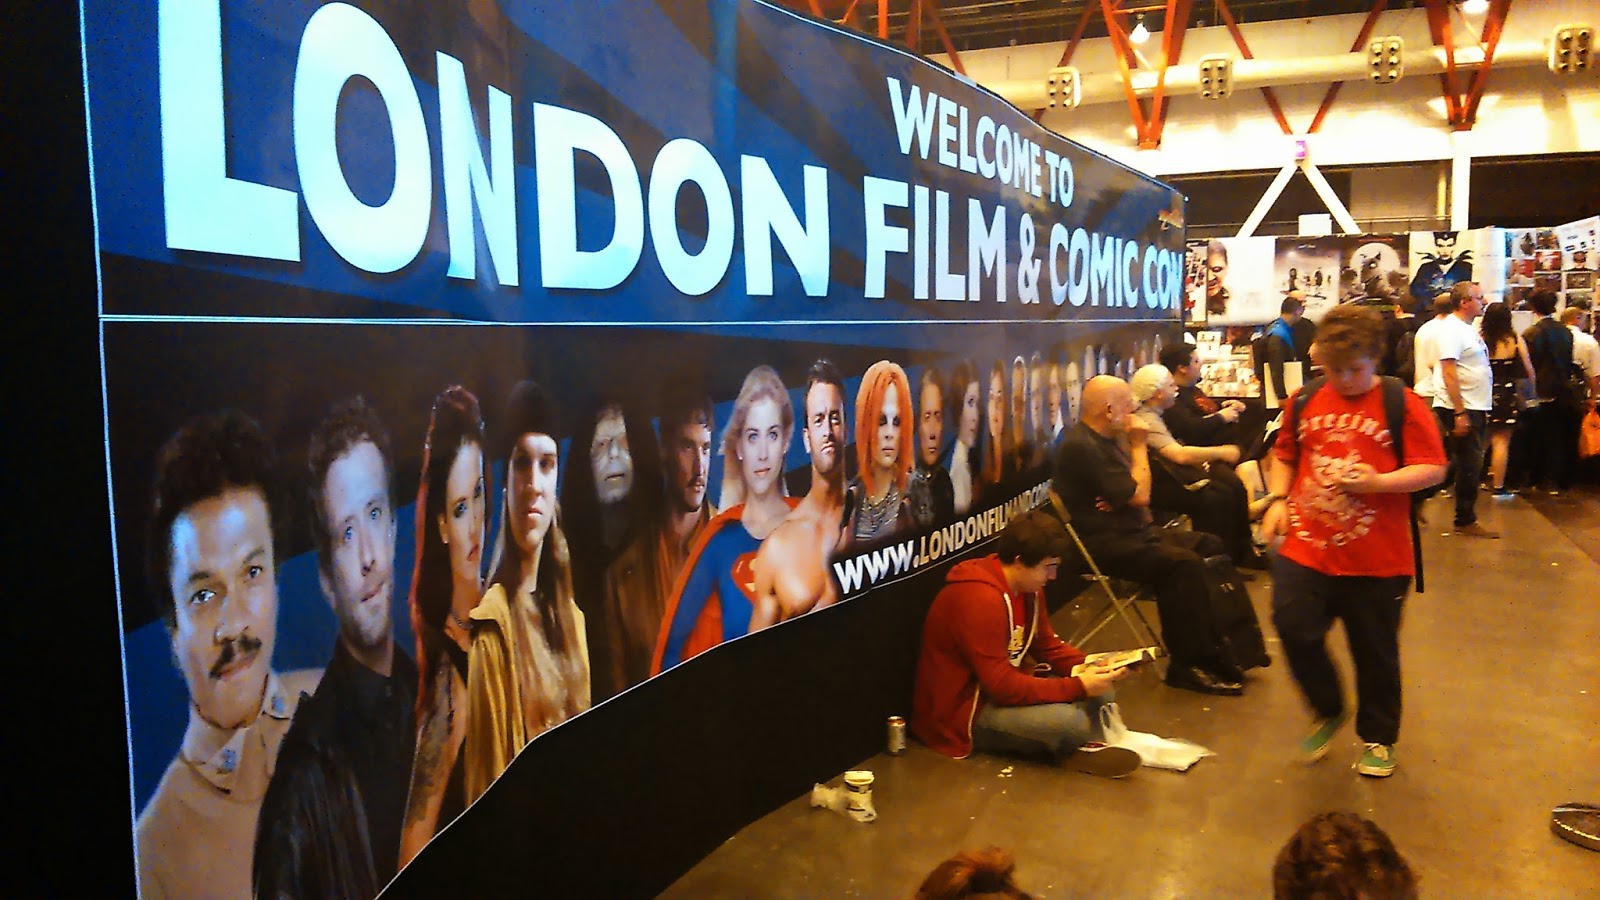 london film comic con 2014